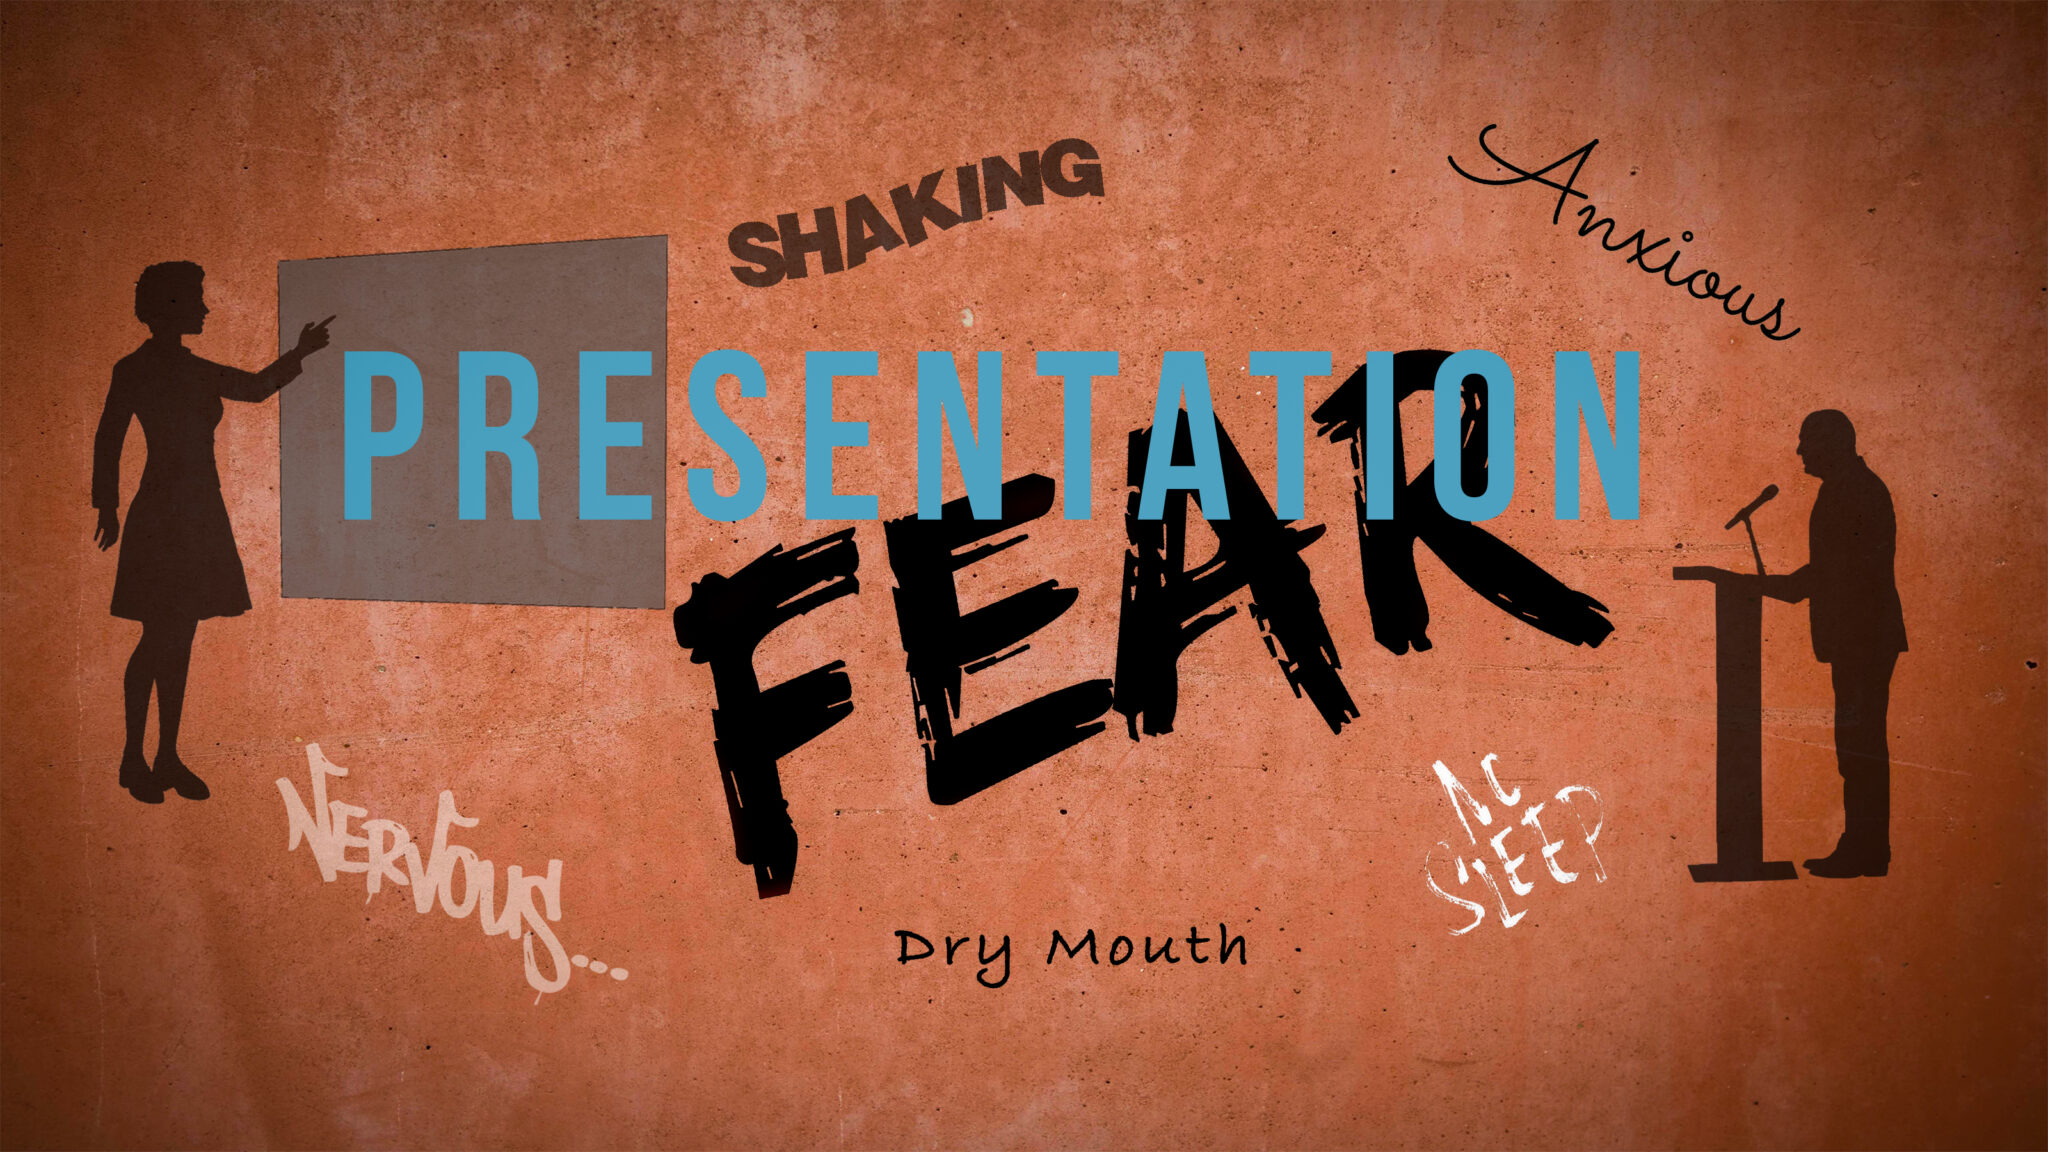 presentation fear youtube